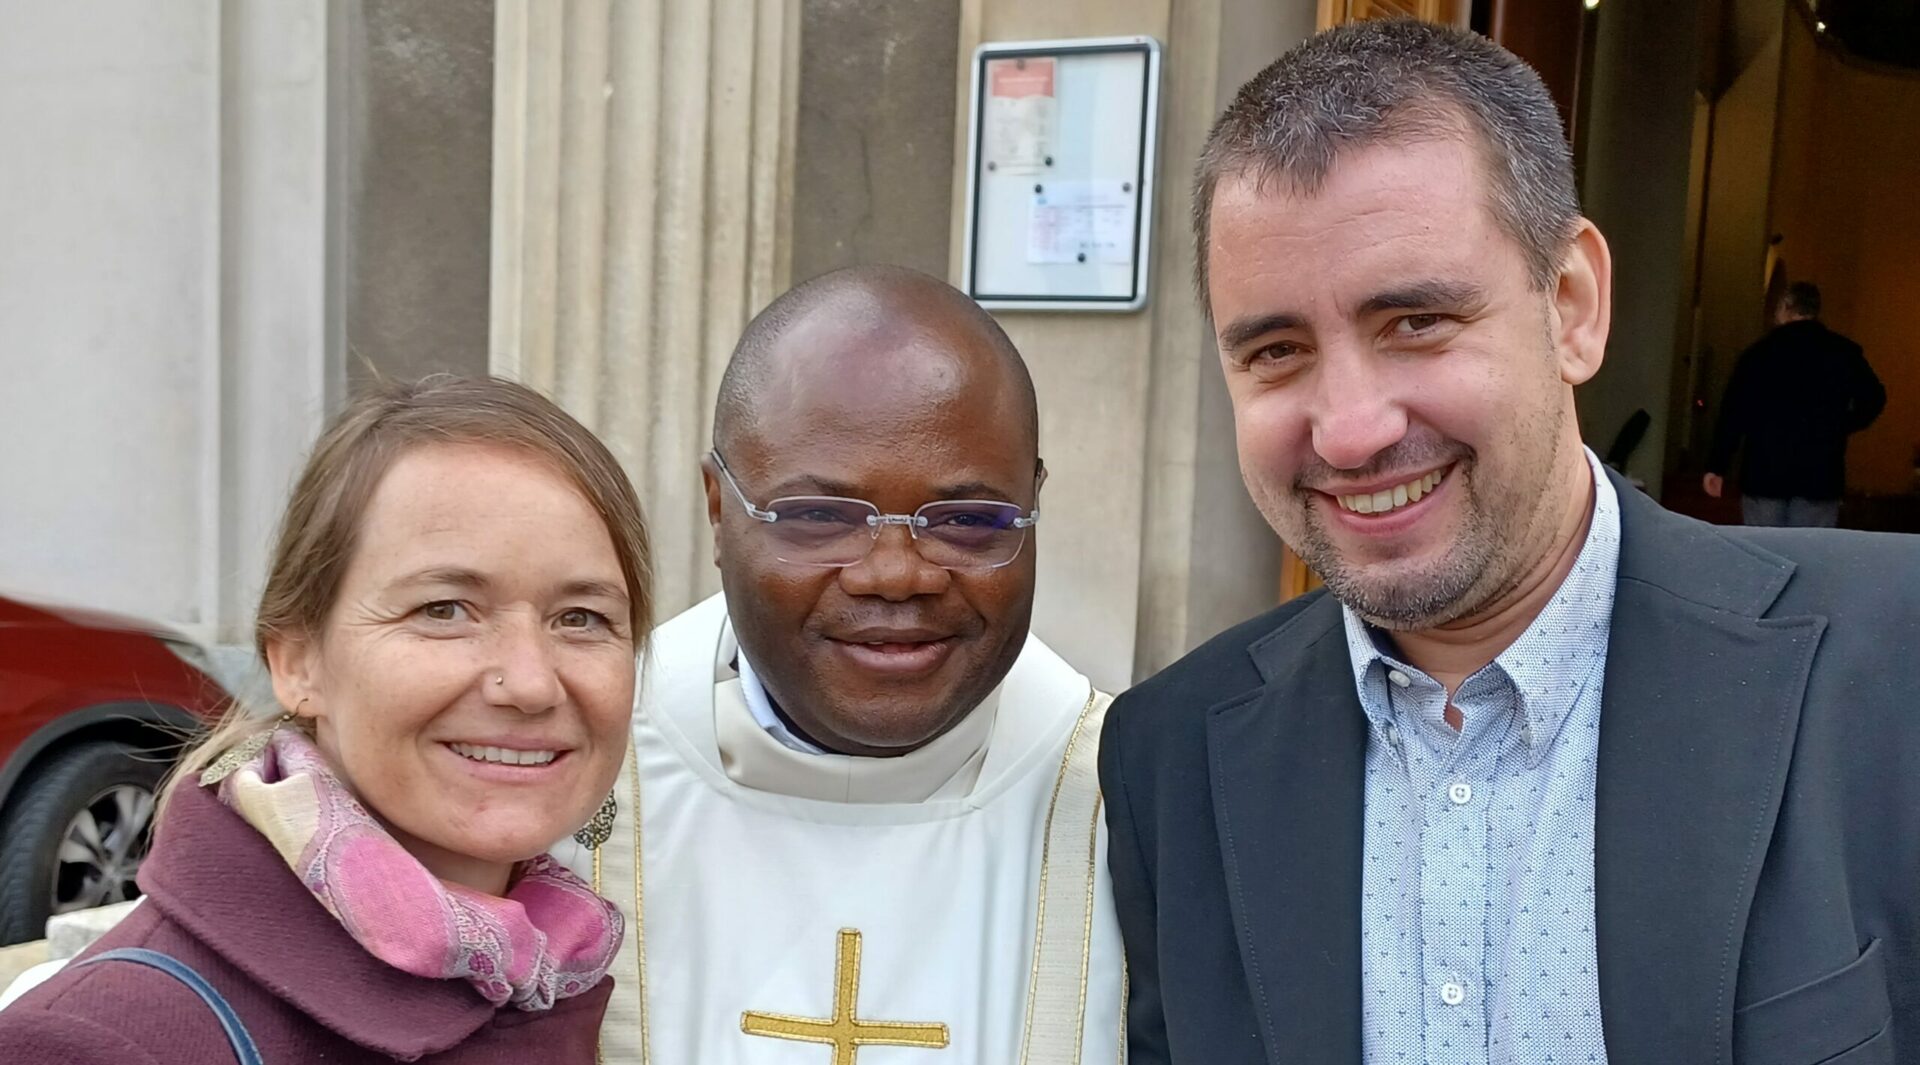 Le nouveau diacre Dalbert Agbossou avec Fabien Udriot, candidat au diaconat, et son épouse Virginie | © Bernard Litzler